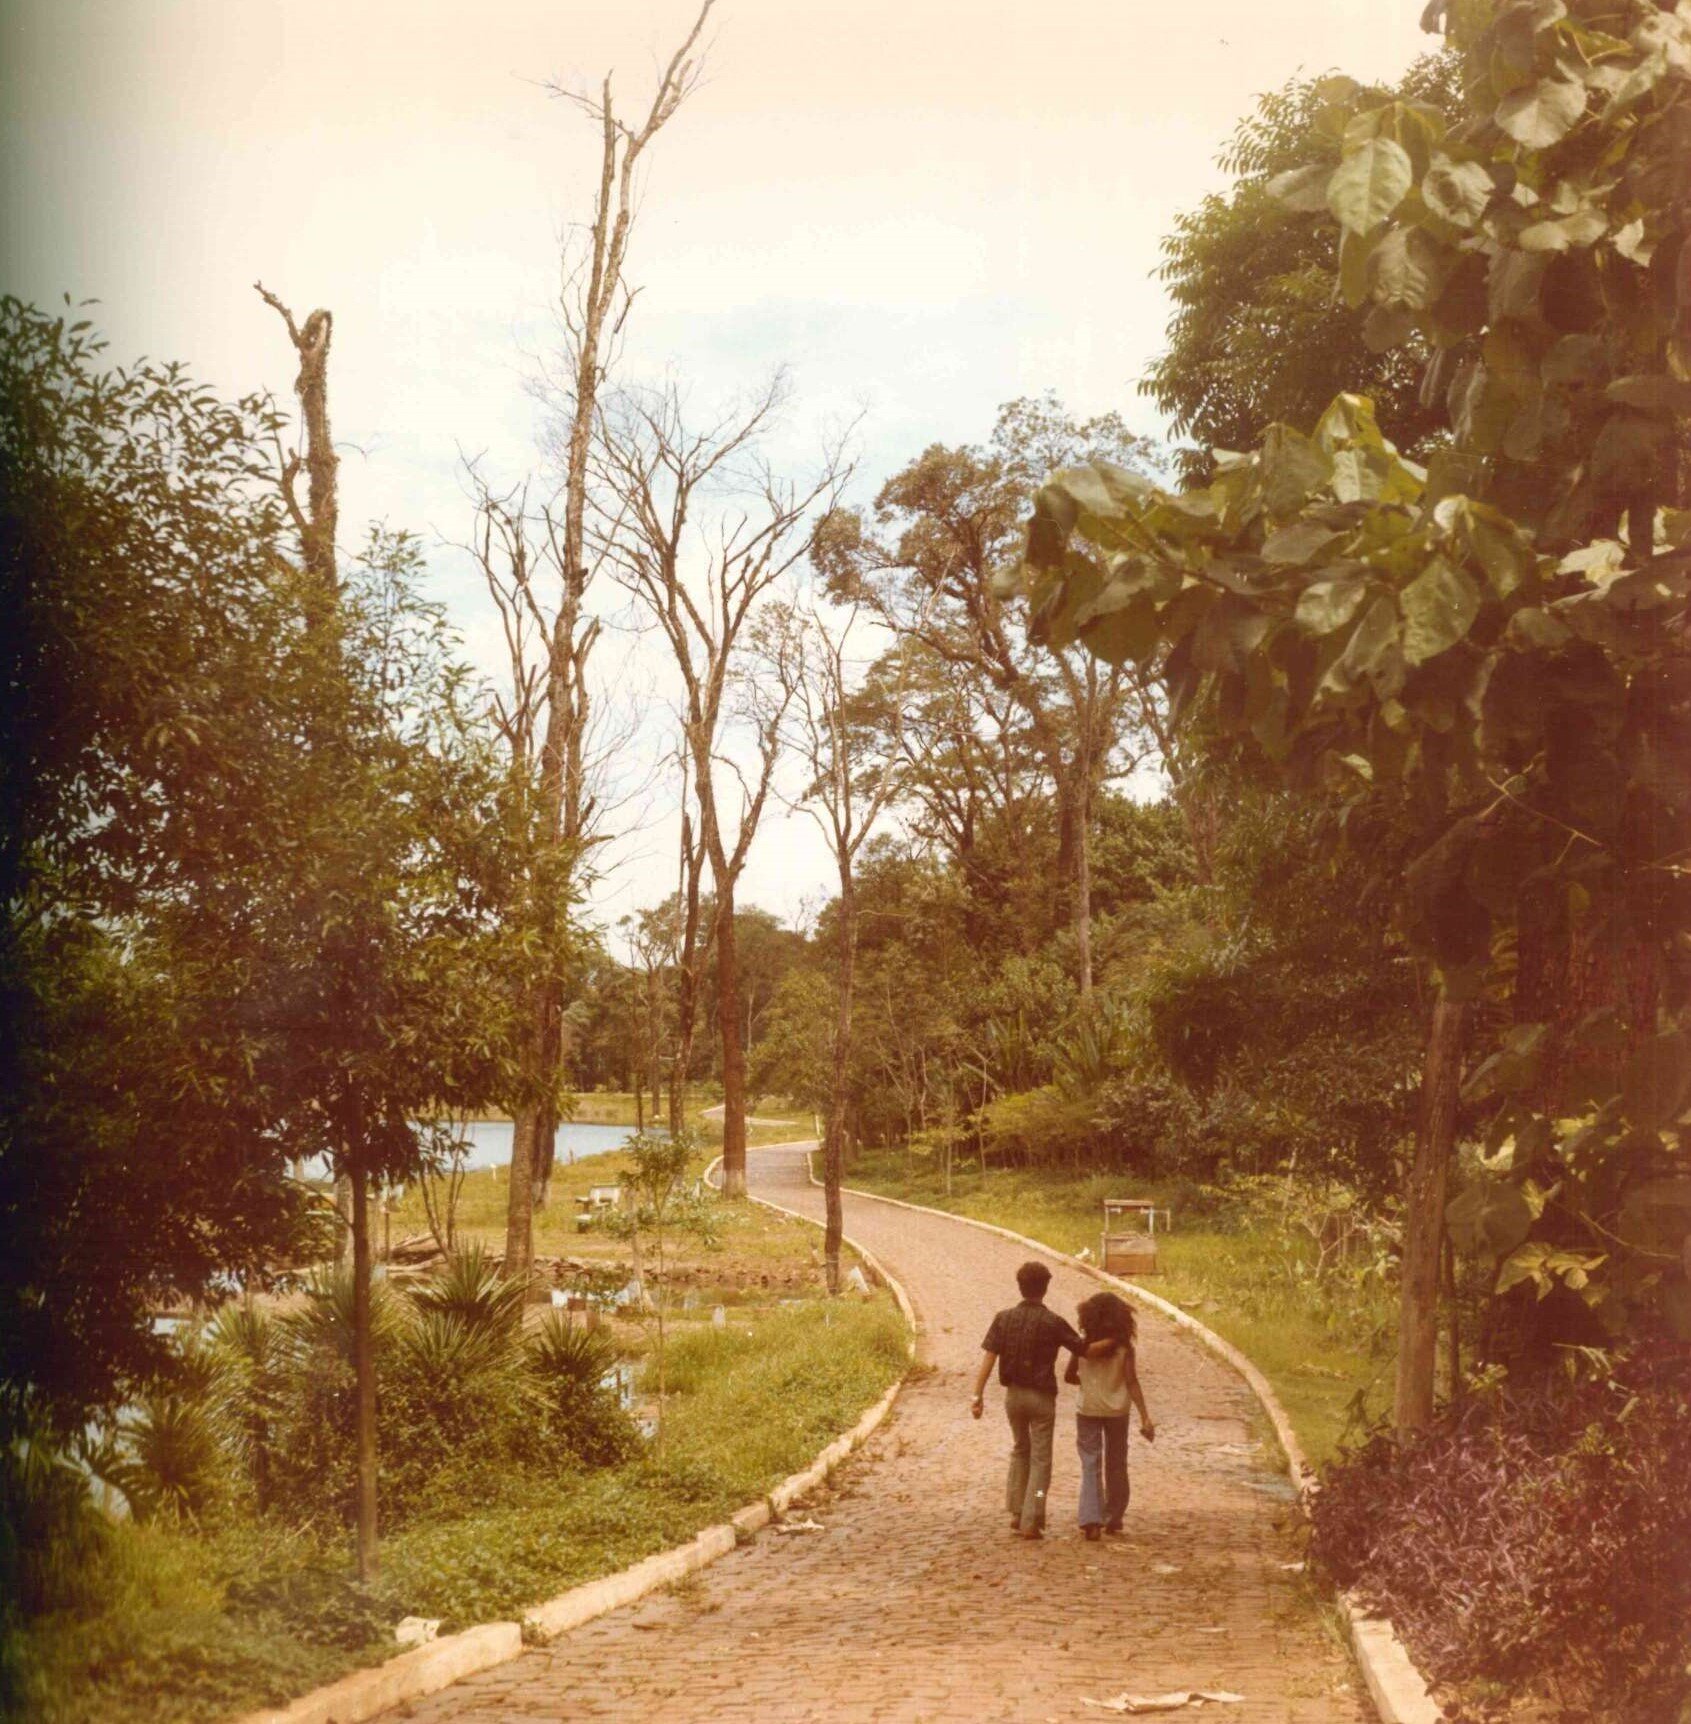 Trilha no interior do Parque do Ingá - Década de 1970